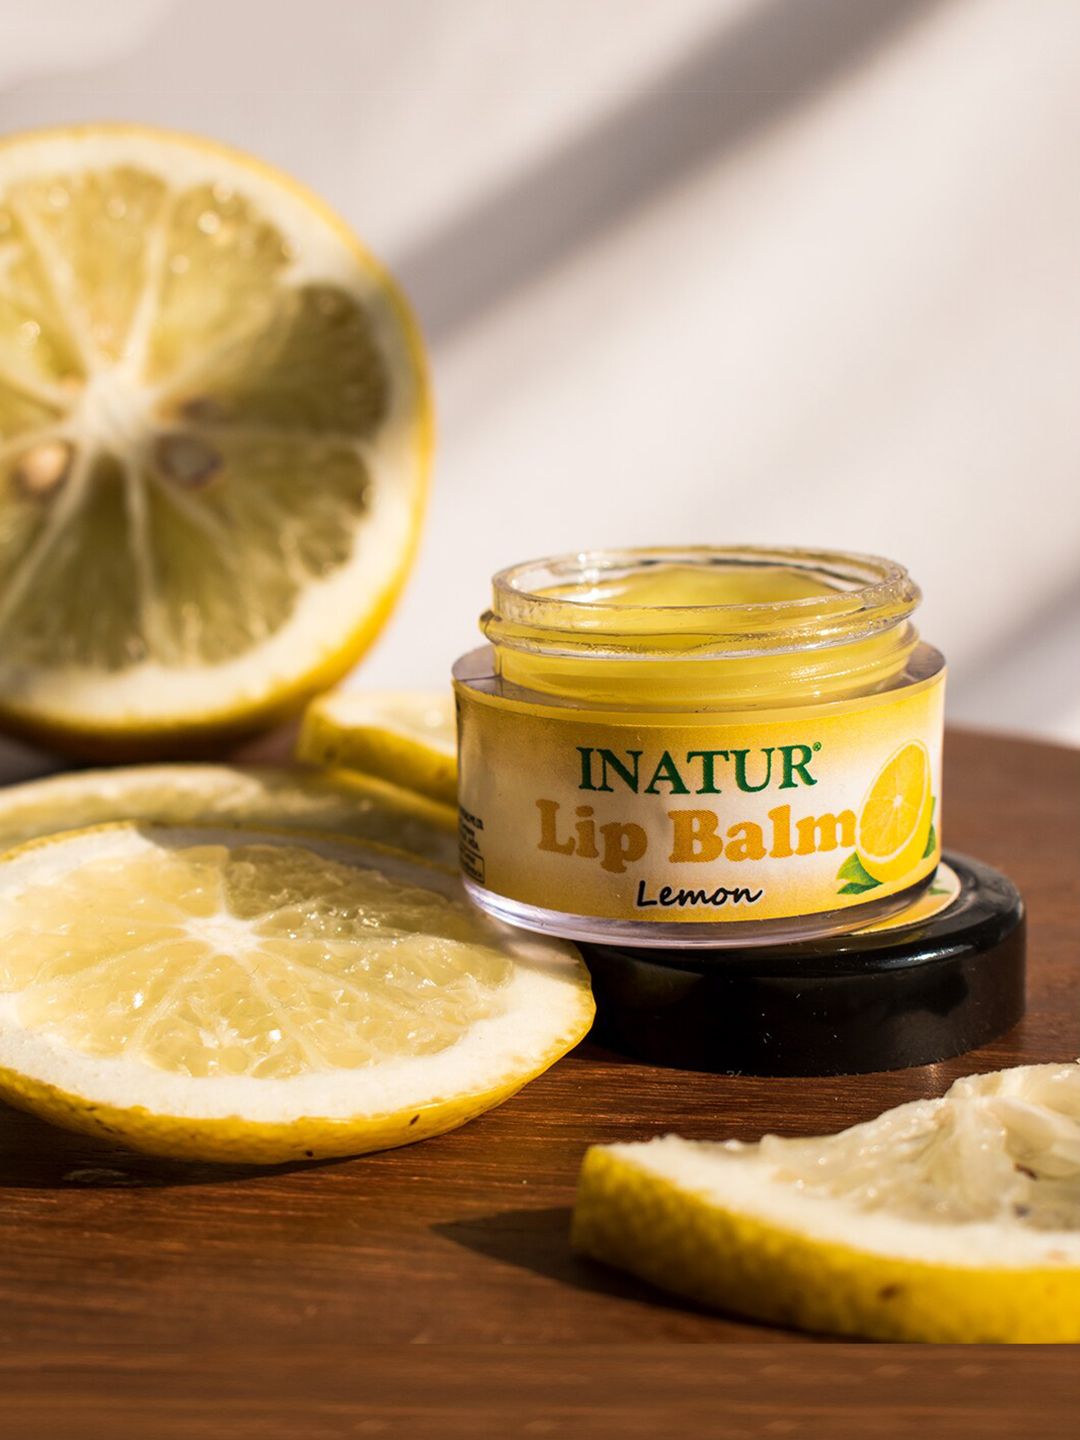 Inatur Lemon Lip Balm 10 g Price in India